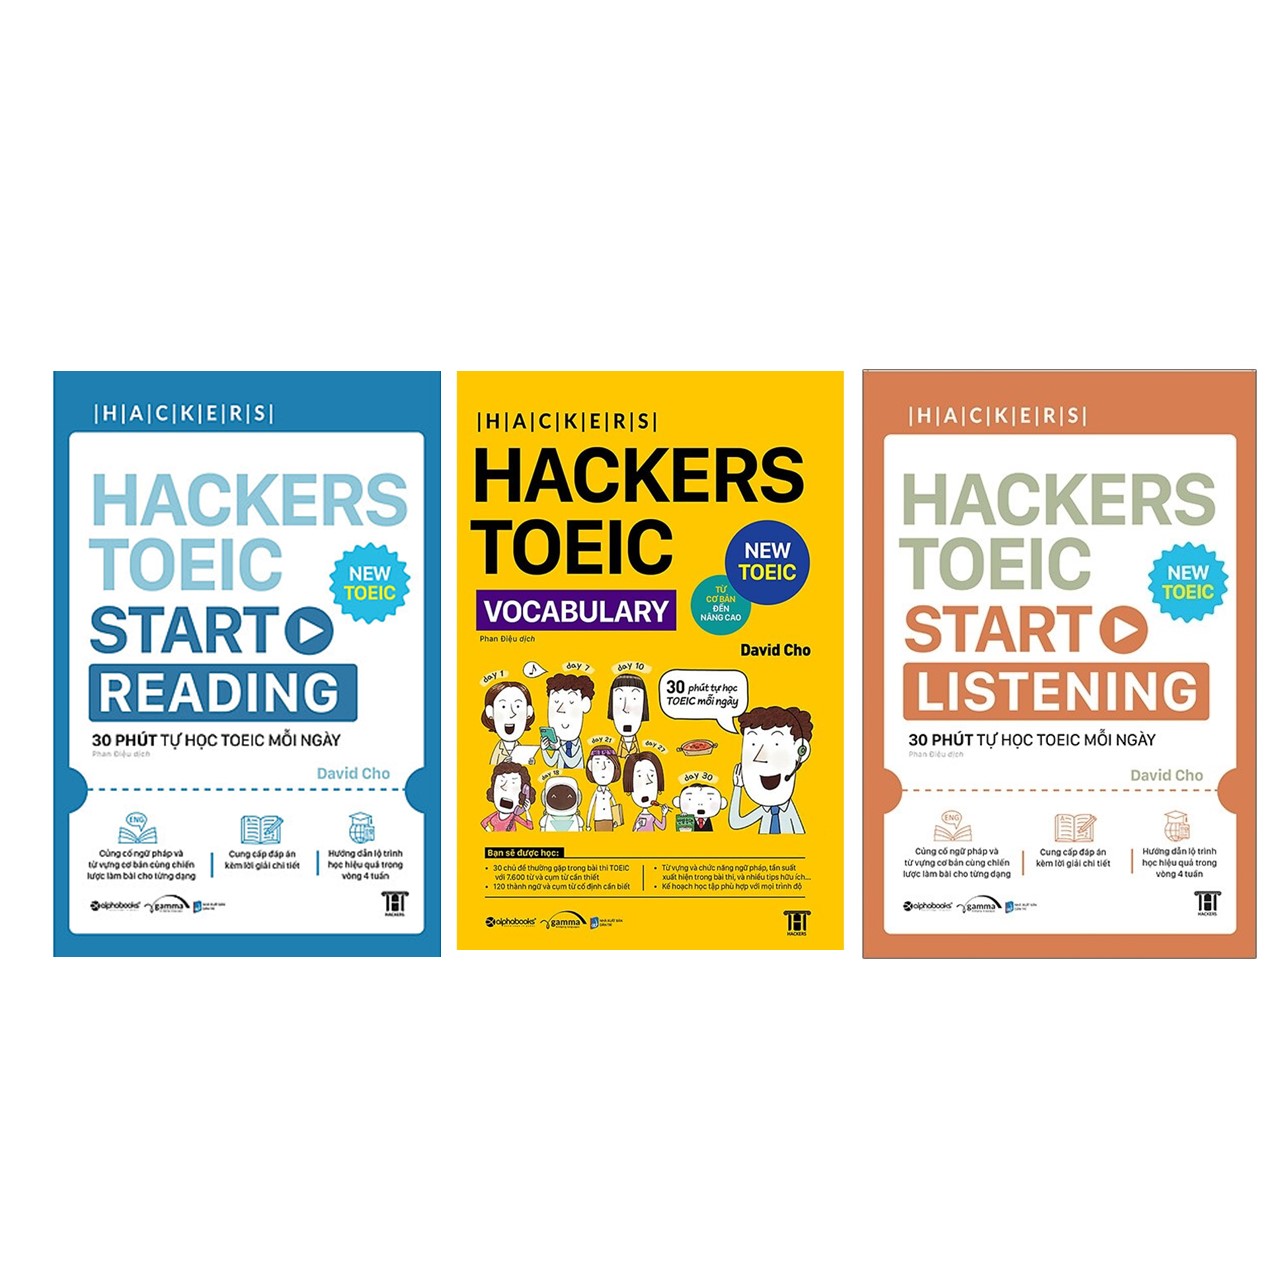 Trạm Đọc | Combo Hackers TOEIC Bứt Phá Điểm Số: Hackers TOEIC Vocabulary + Hackers TOEIC Start Reading + Hackers TOEIC Start Listening